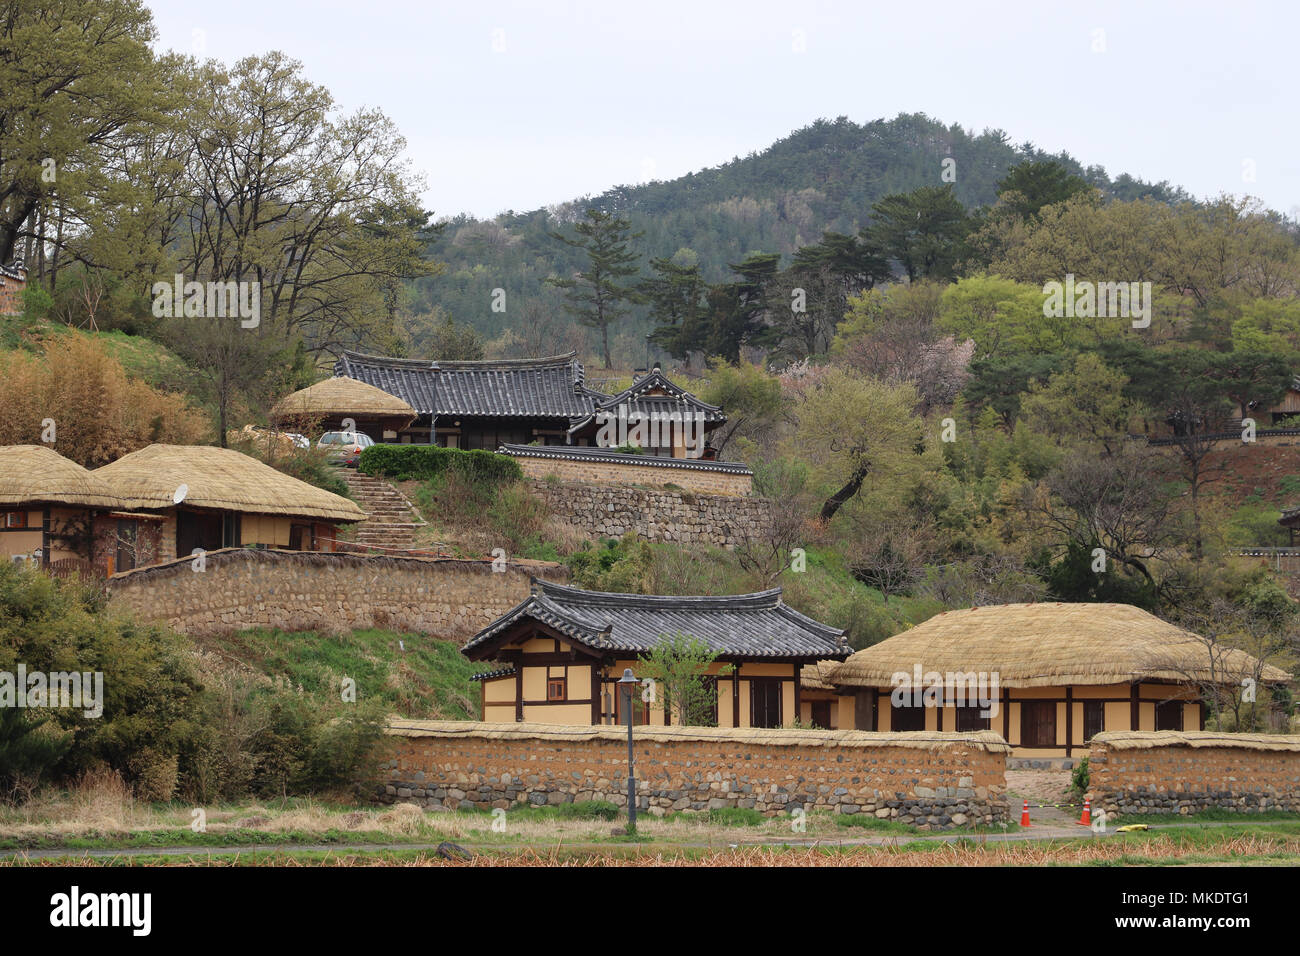 In Yangdong Dorfes, Südkorea, 15. Jahrhundert Häuser sind in diesem UNESCO-Website erhalten. Strohdach und Ziegeldach Häuser am Hügel, Bäume, Berge gebaut. Stockfoto